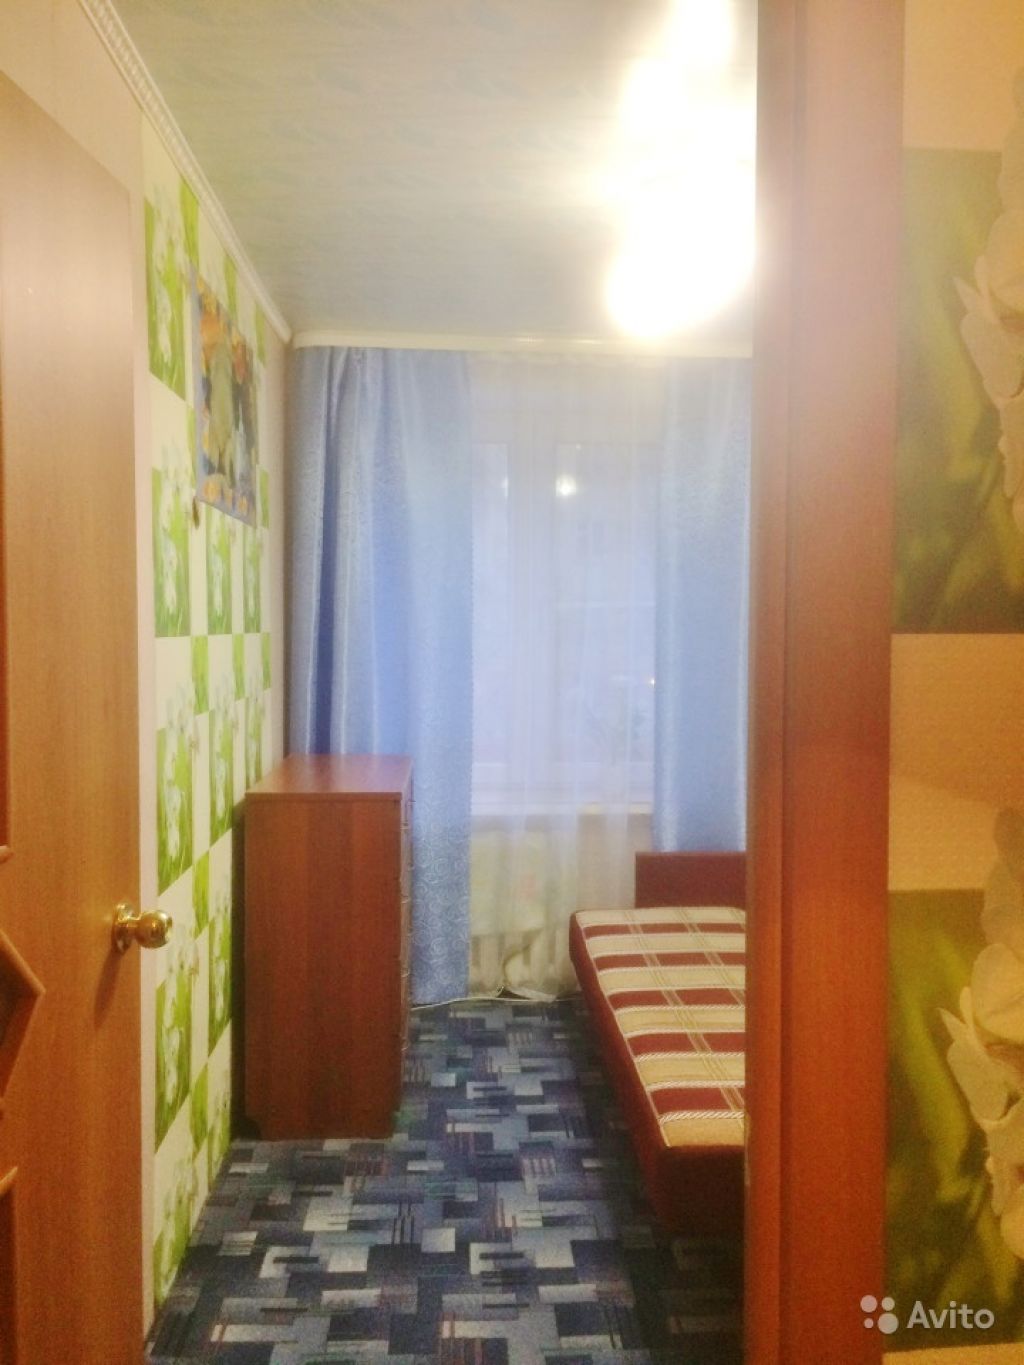 Сдам комнату Комната 9 м² в 2-к квартире на 2 этаже 5-этажного кирпичного дома в Москве. Фото 1